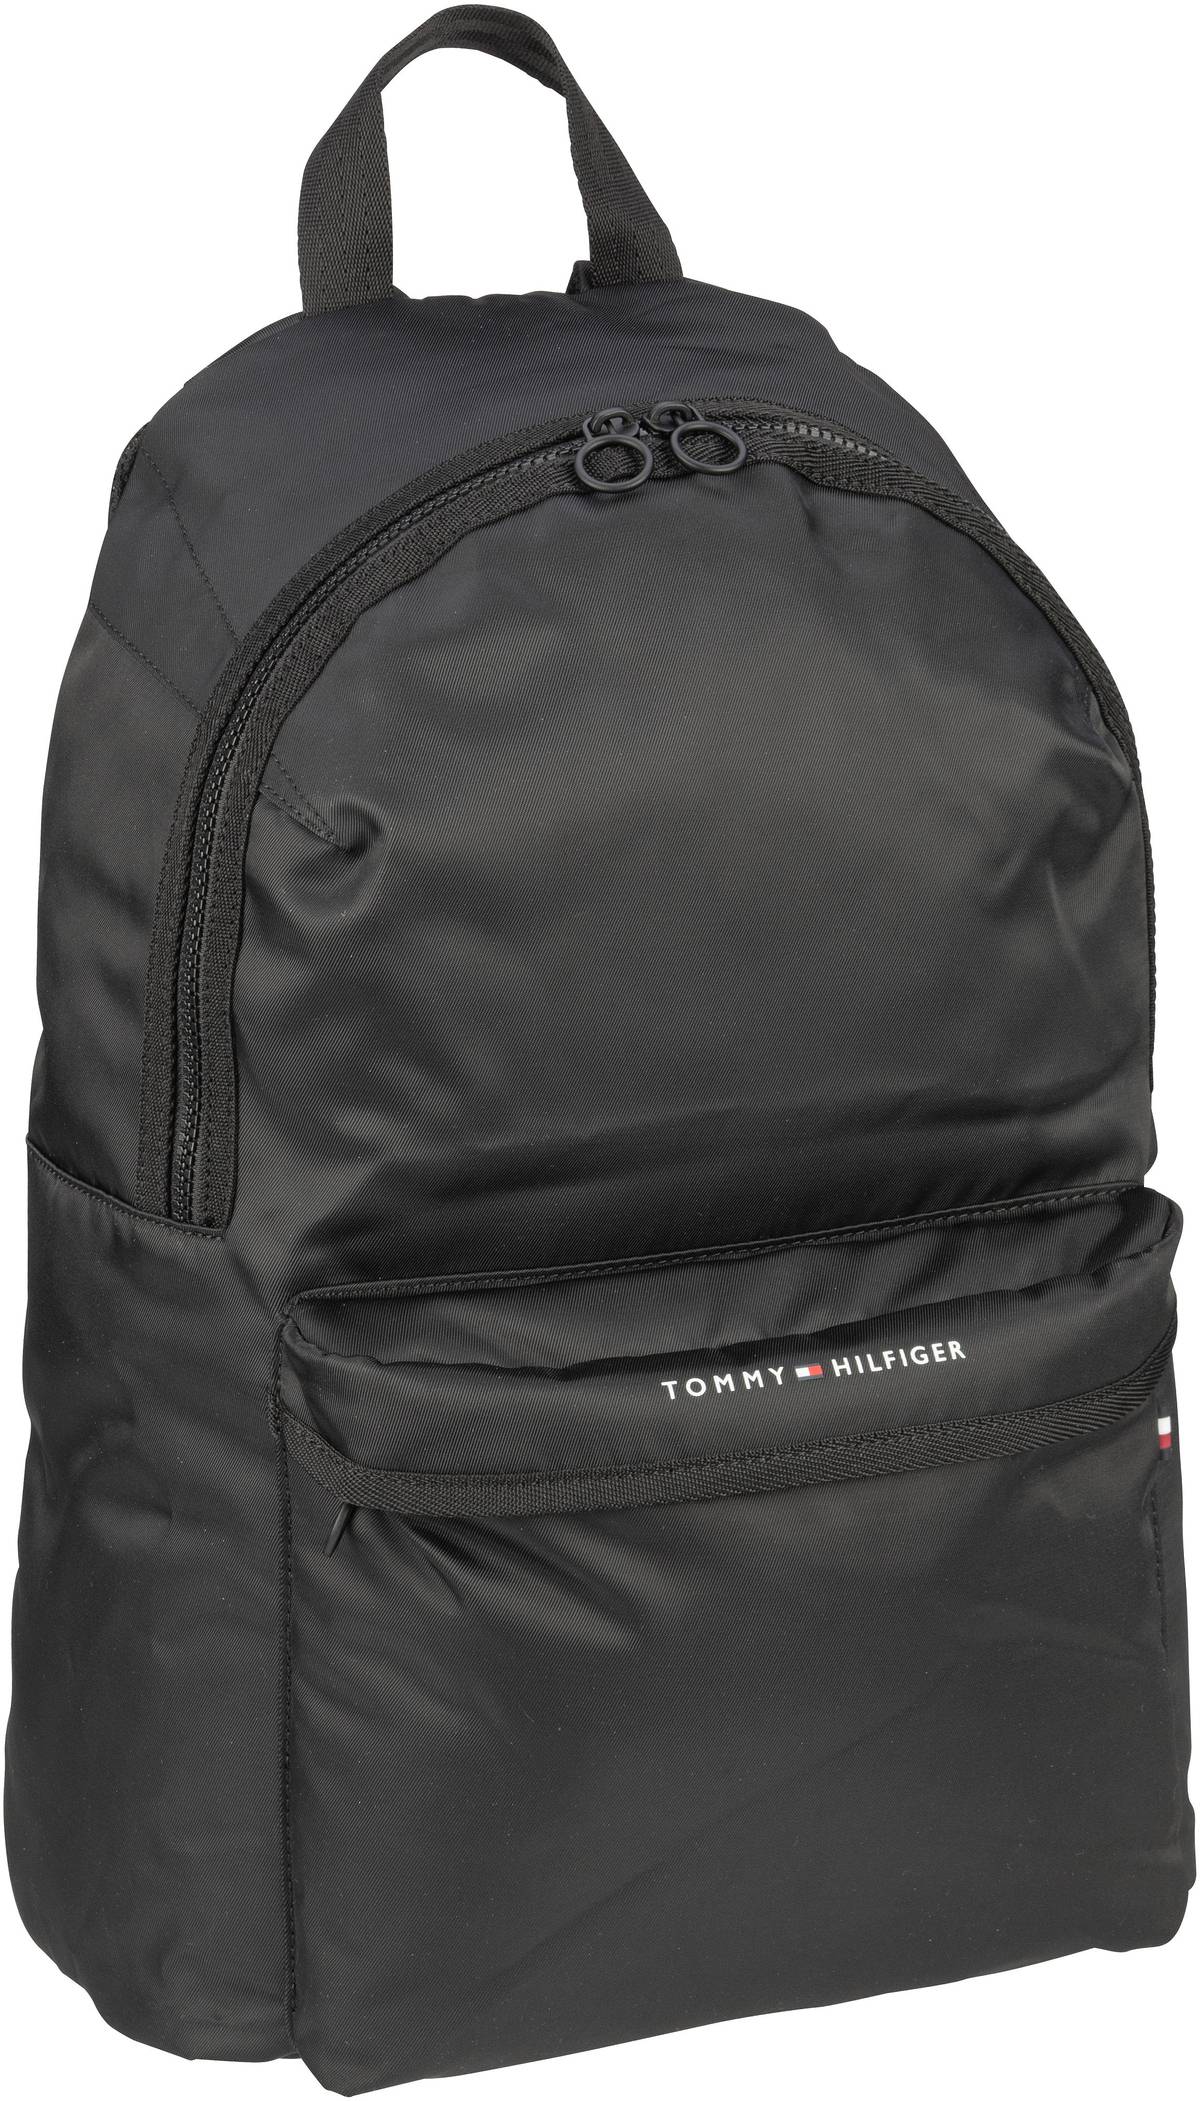 tommy hilfiger -  Rucksack / Daypack TH Skyline Backpack SP23 Black (16.6 Liter)